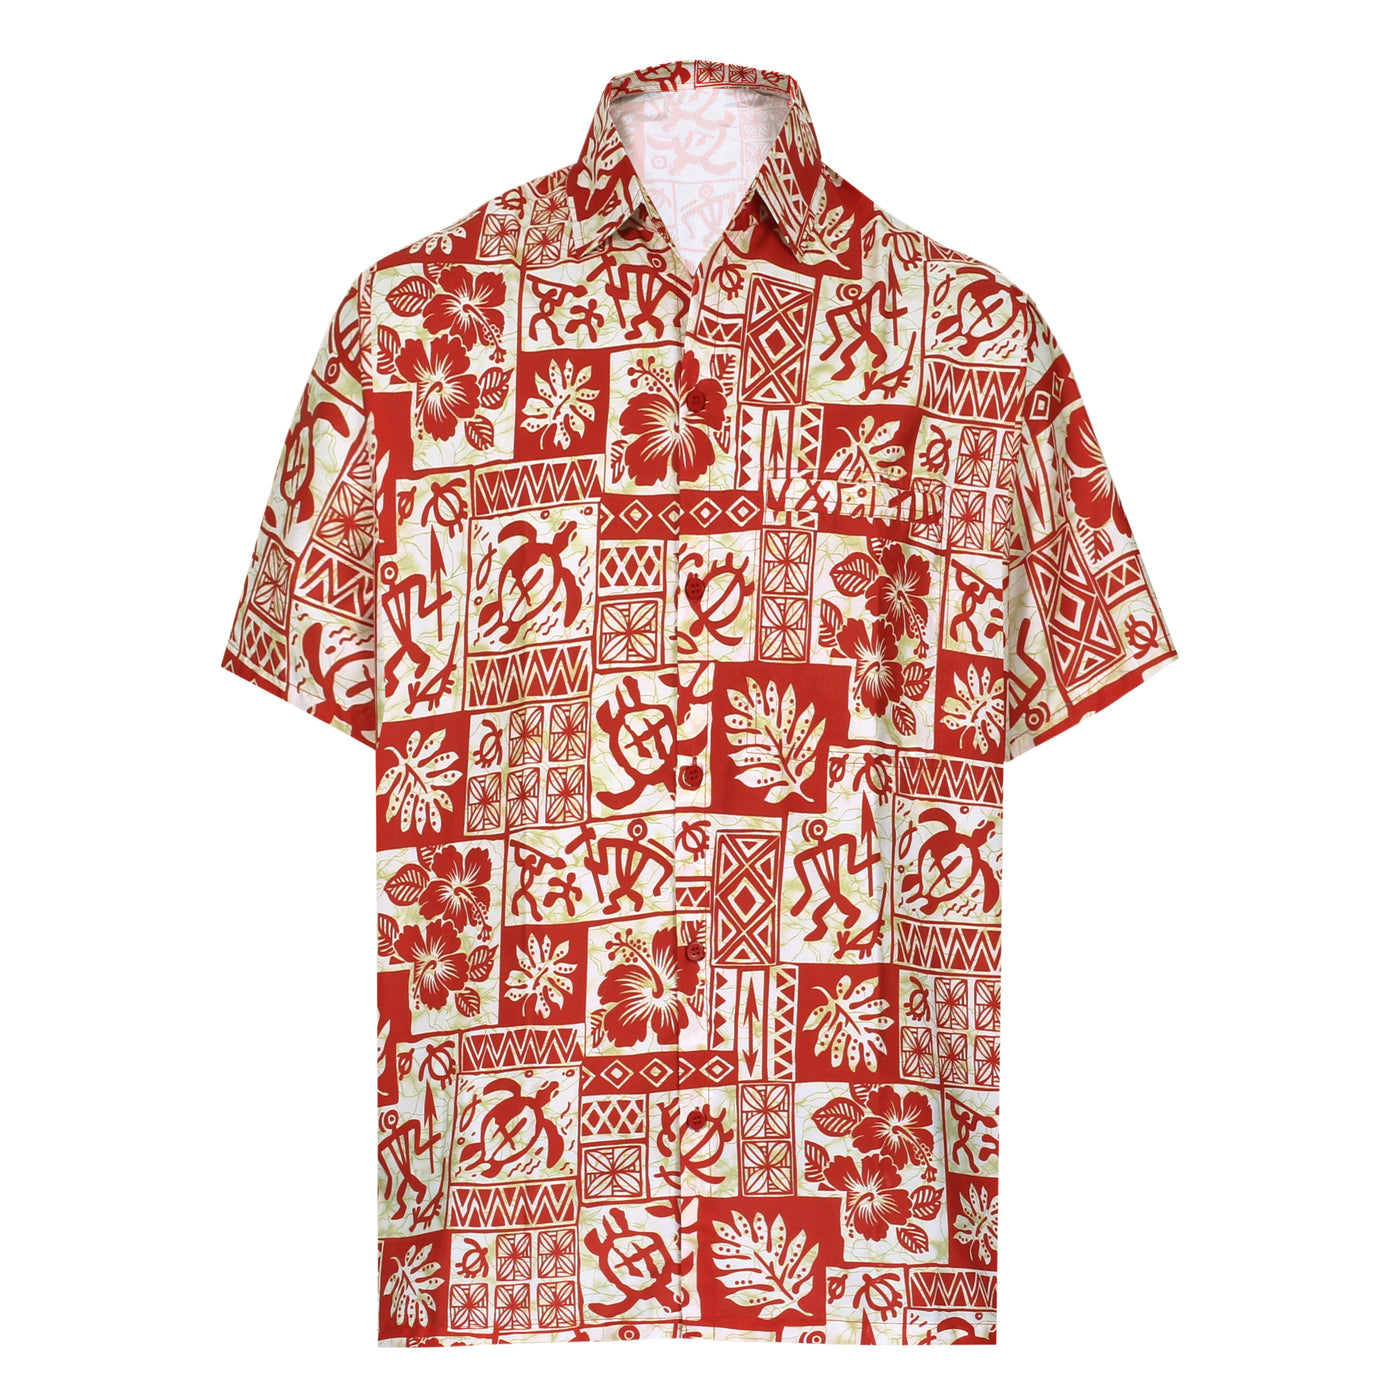 Buy now ride wave hawaiian shirt